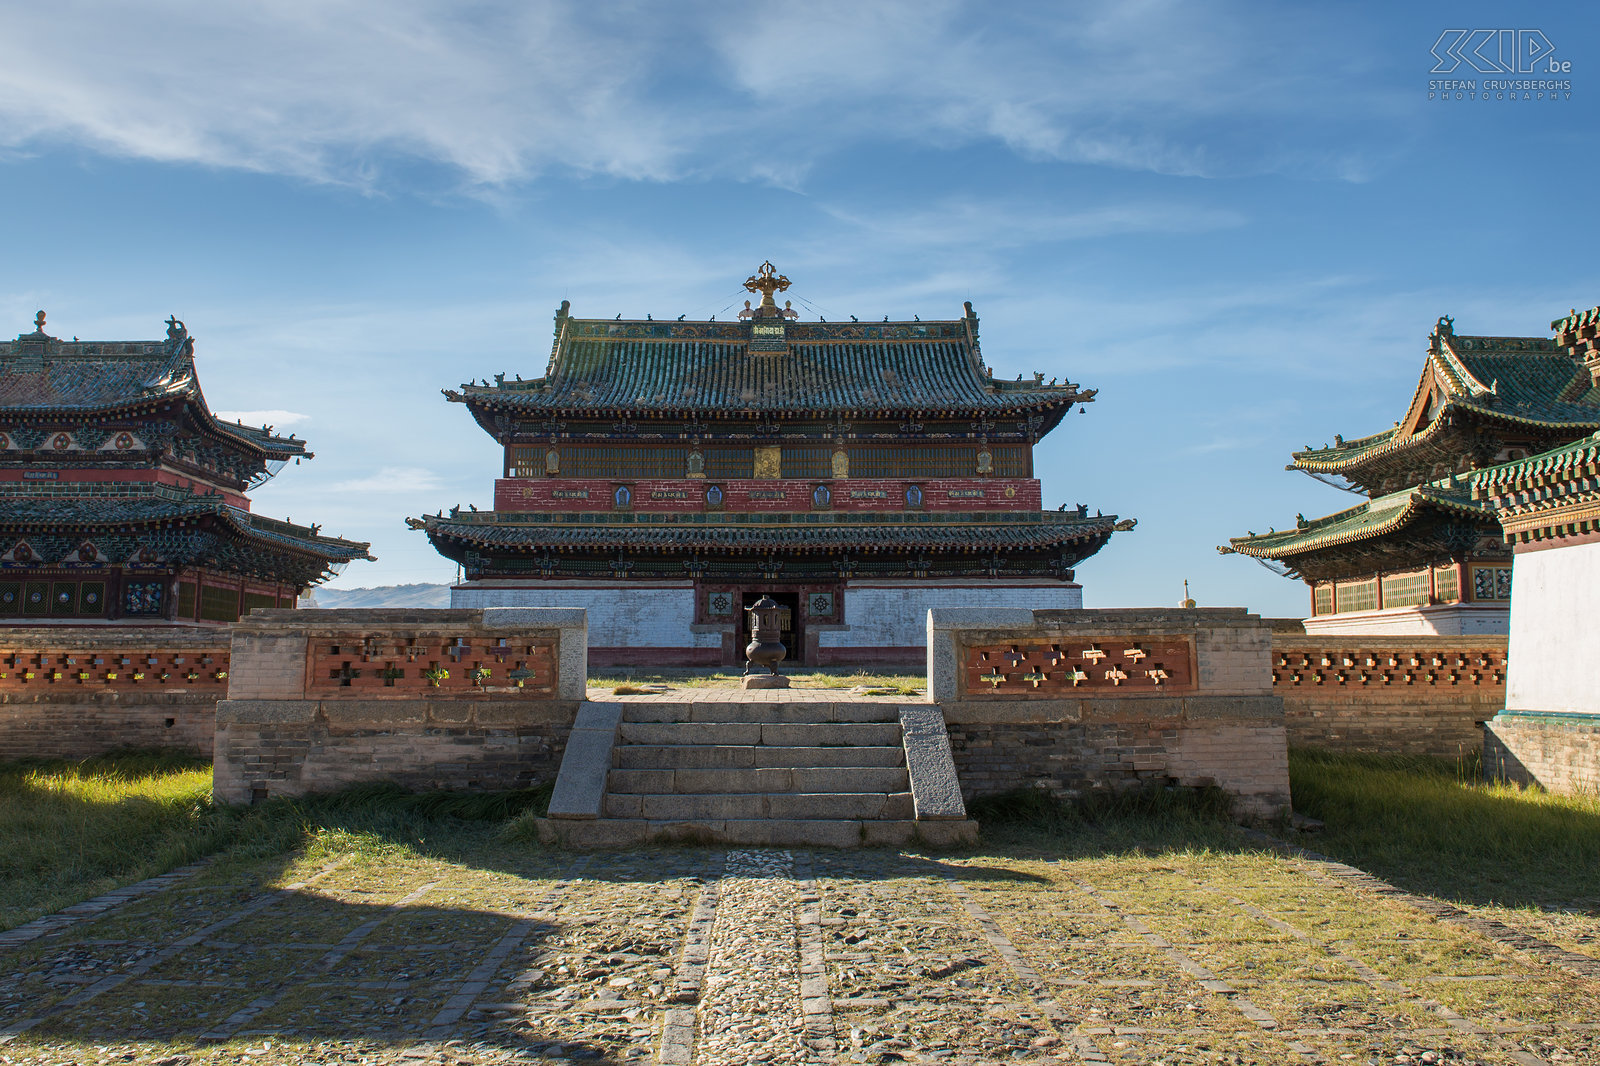 Kharkhorin - Erdene Zuu Vandaag de dag blijven er slechts een drietal tempels over die hun oude glorie hebben behouden. Het klooster is omgeven door mooie witte muren met 108 stupa’s, wat een heilig getal is in het boeddhisme. Het klooster staat ook op de Werelderfgoedlijst van UNESCO want het is het oudste klooster van het land.  Stefan Cruysberghs